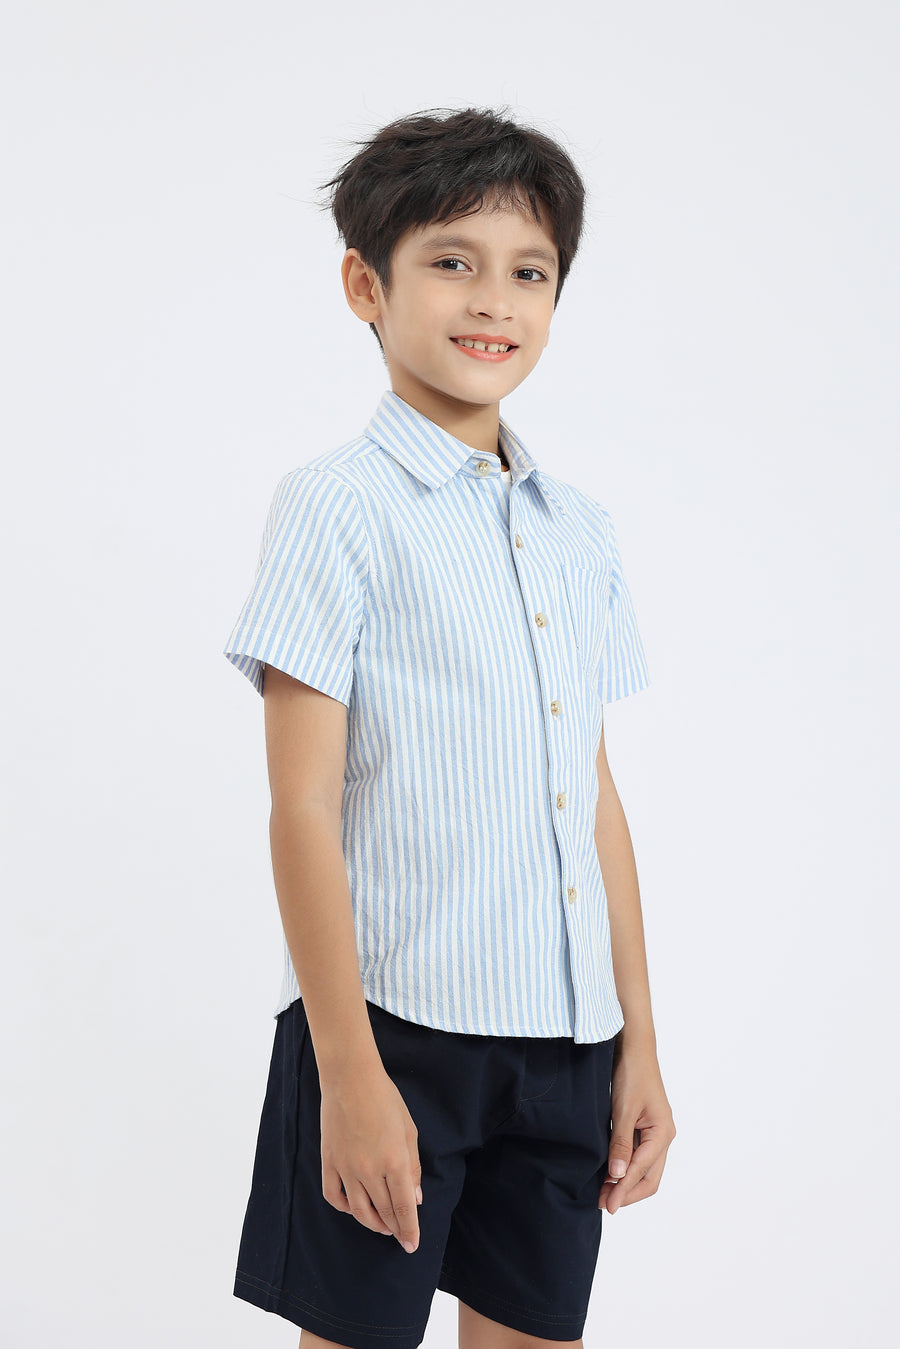 Ezra Button Shirt In Blue Stripes